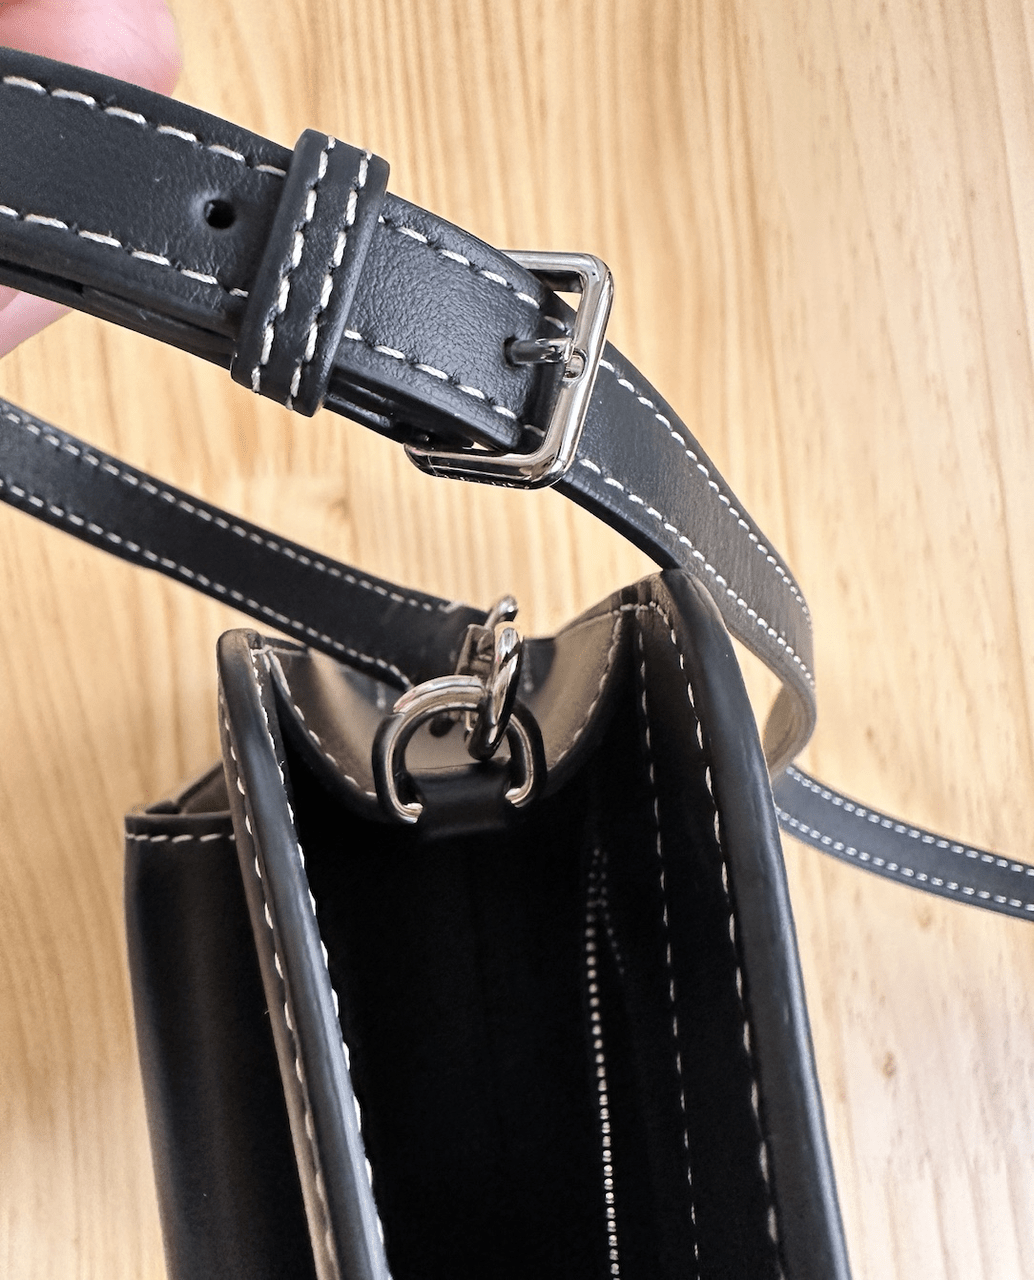 #分享 🚩華泰購入Burberry口袋包 + 容量實測(圖多) - 精品板 | Dcard